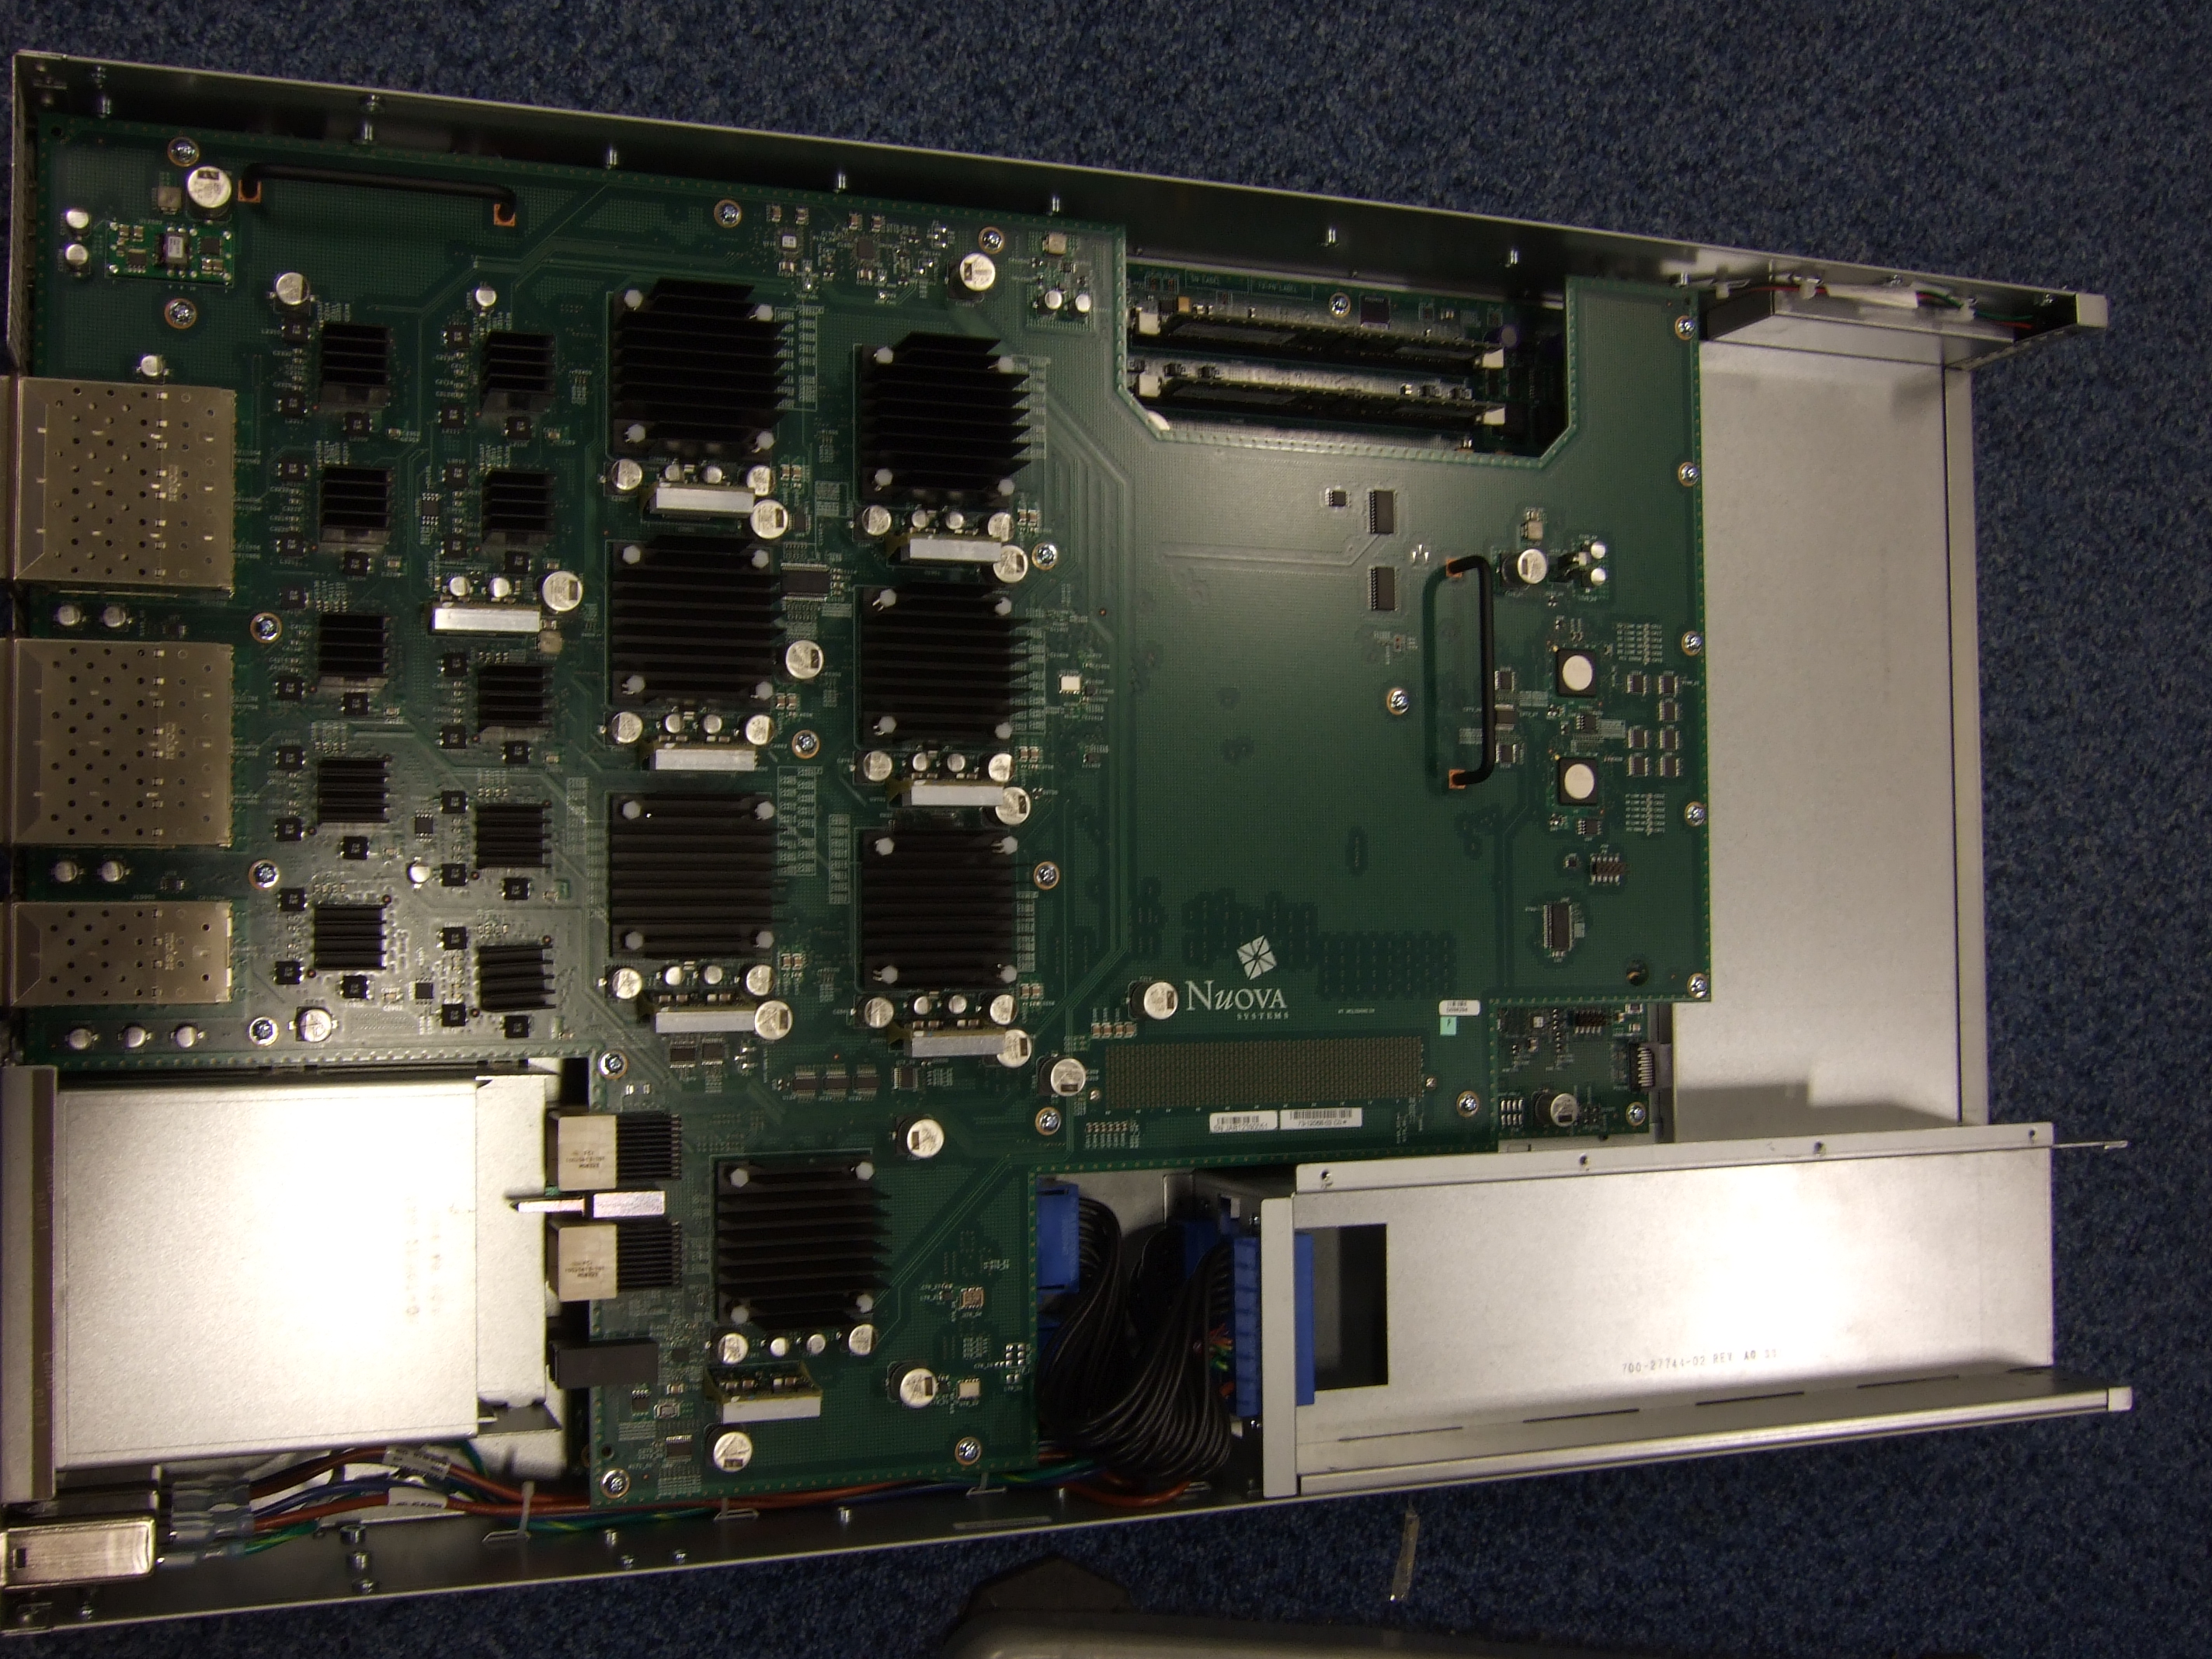 Nexus 5020 - ports at left, PSU slots at bottom. Top motherboard visible